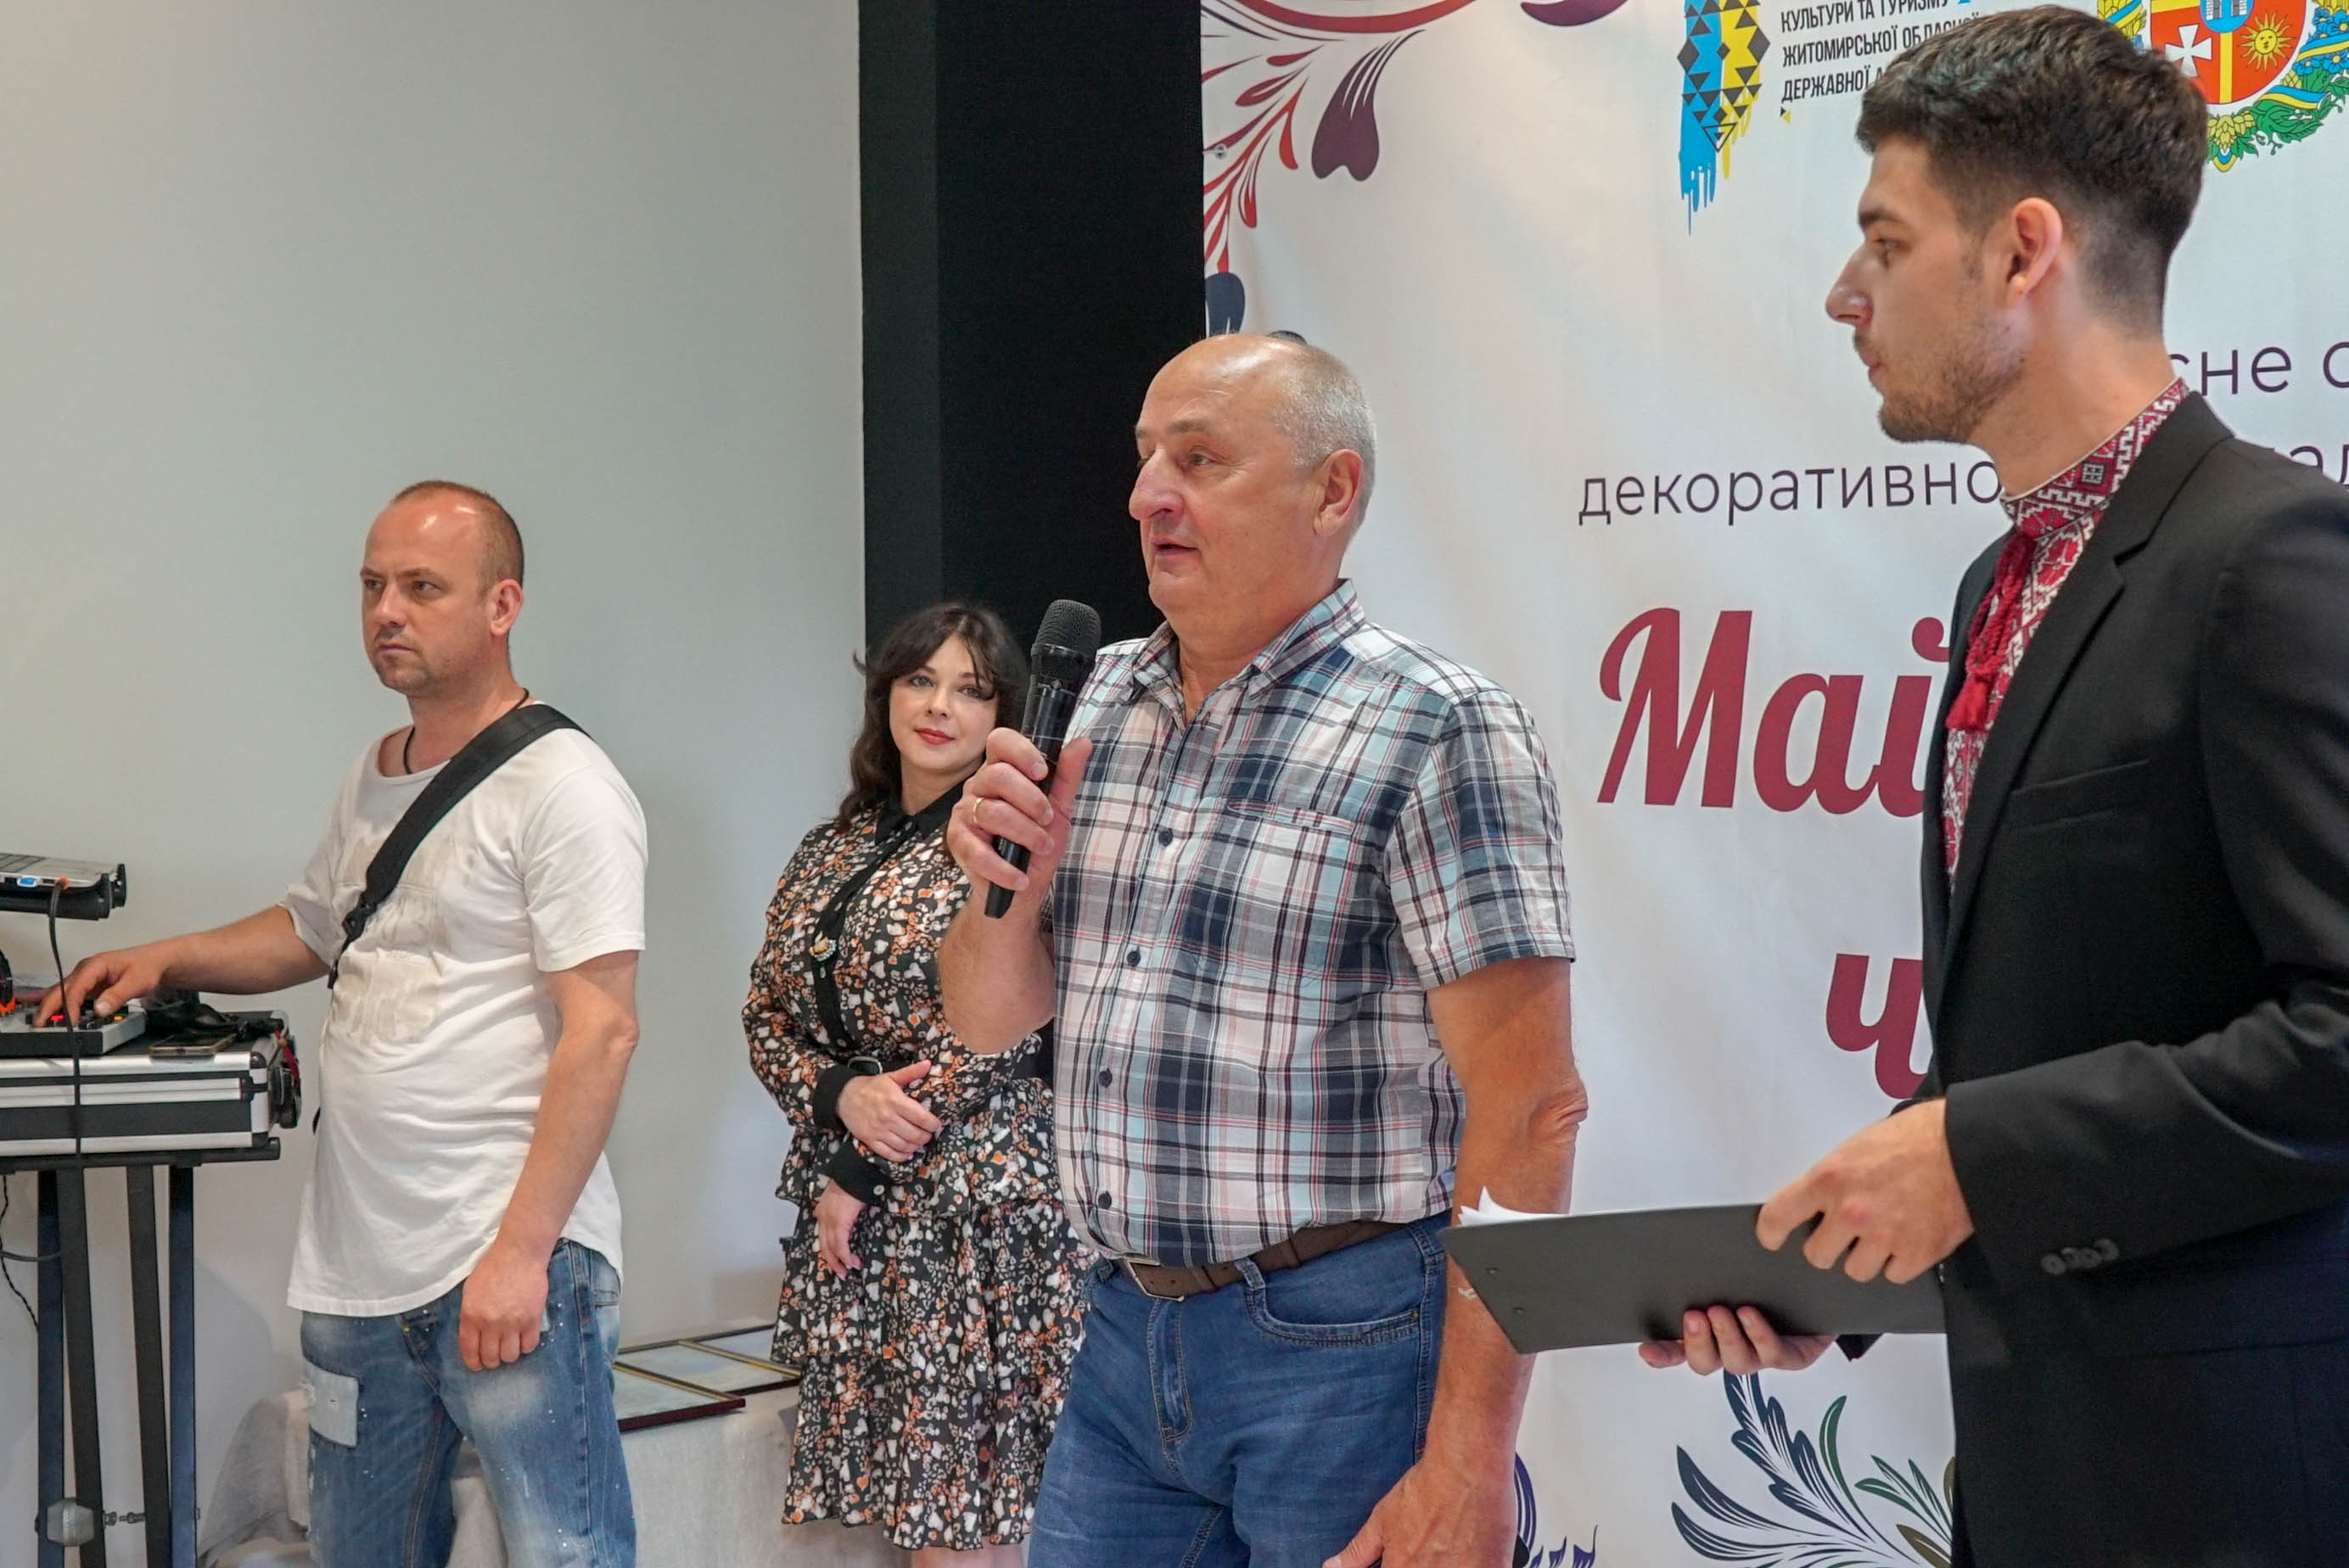 Володимир Ширма відвідав свято декоративно-прикладного мистецтва «Майстерний червень»